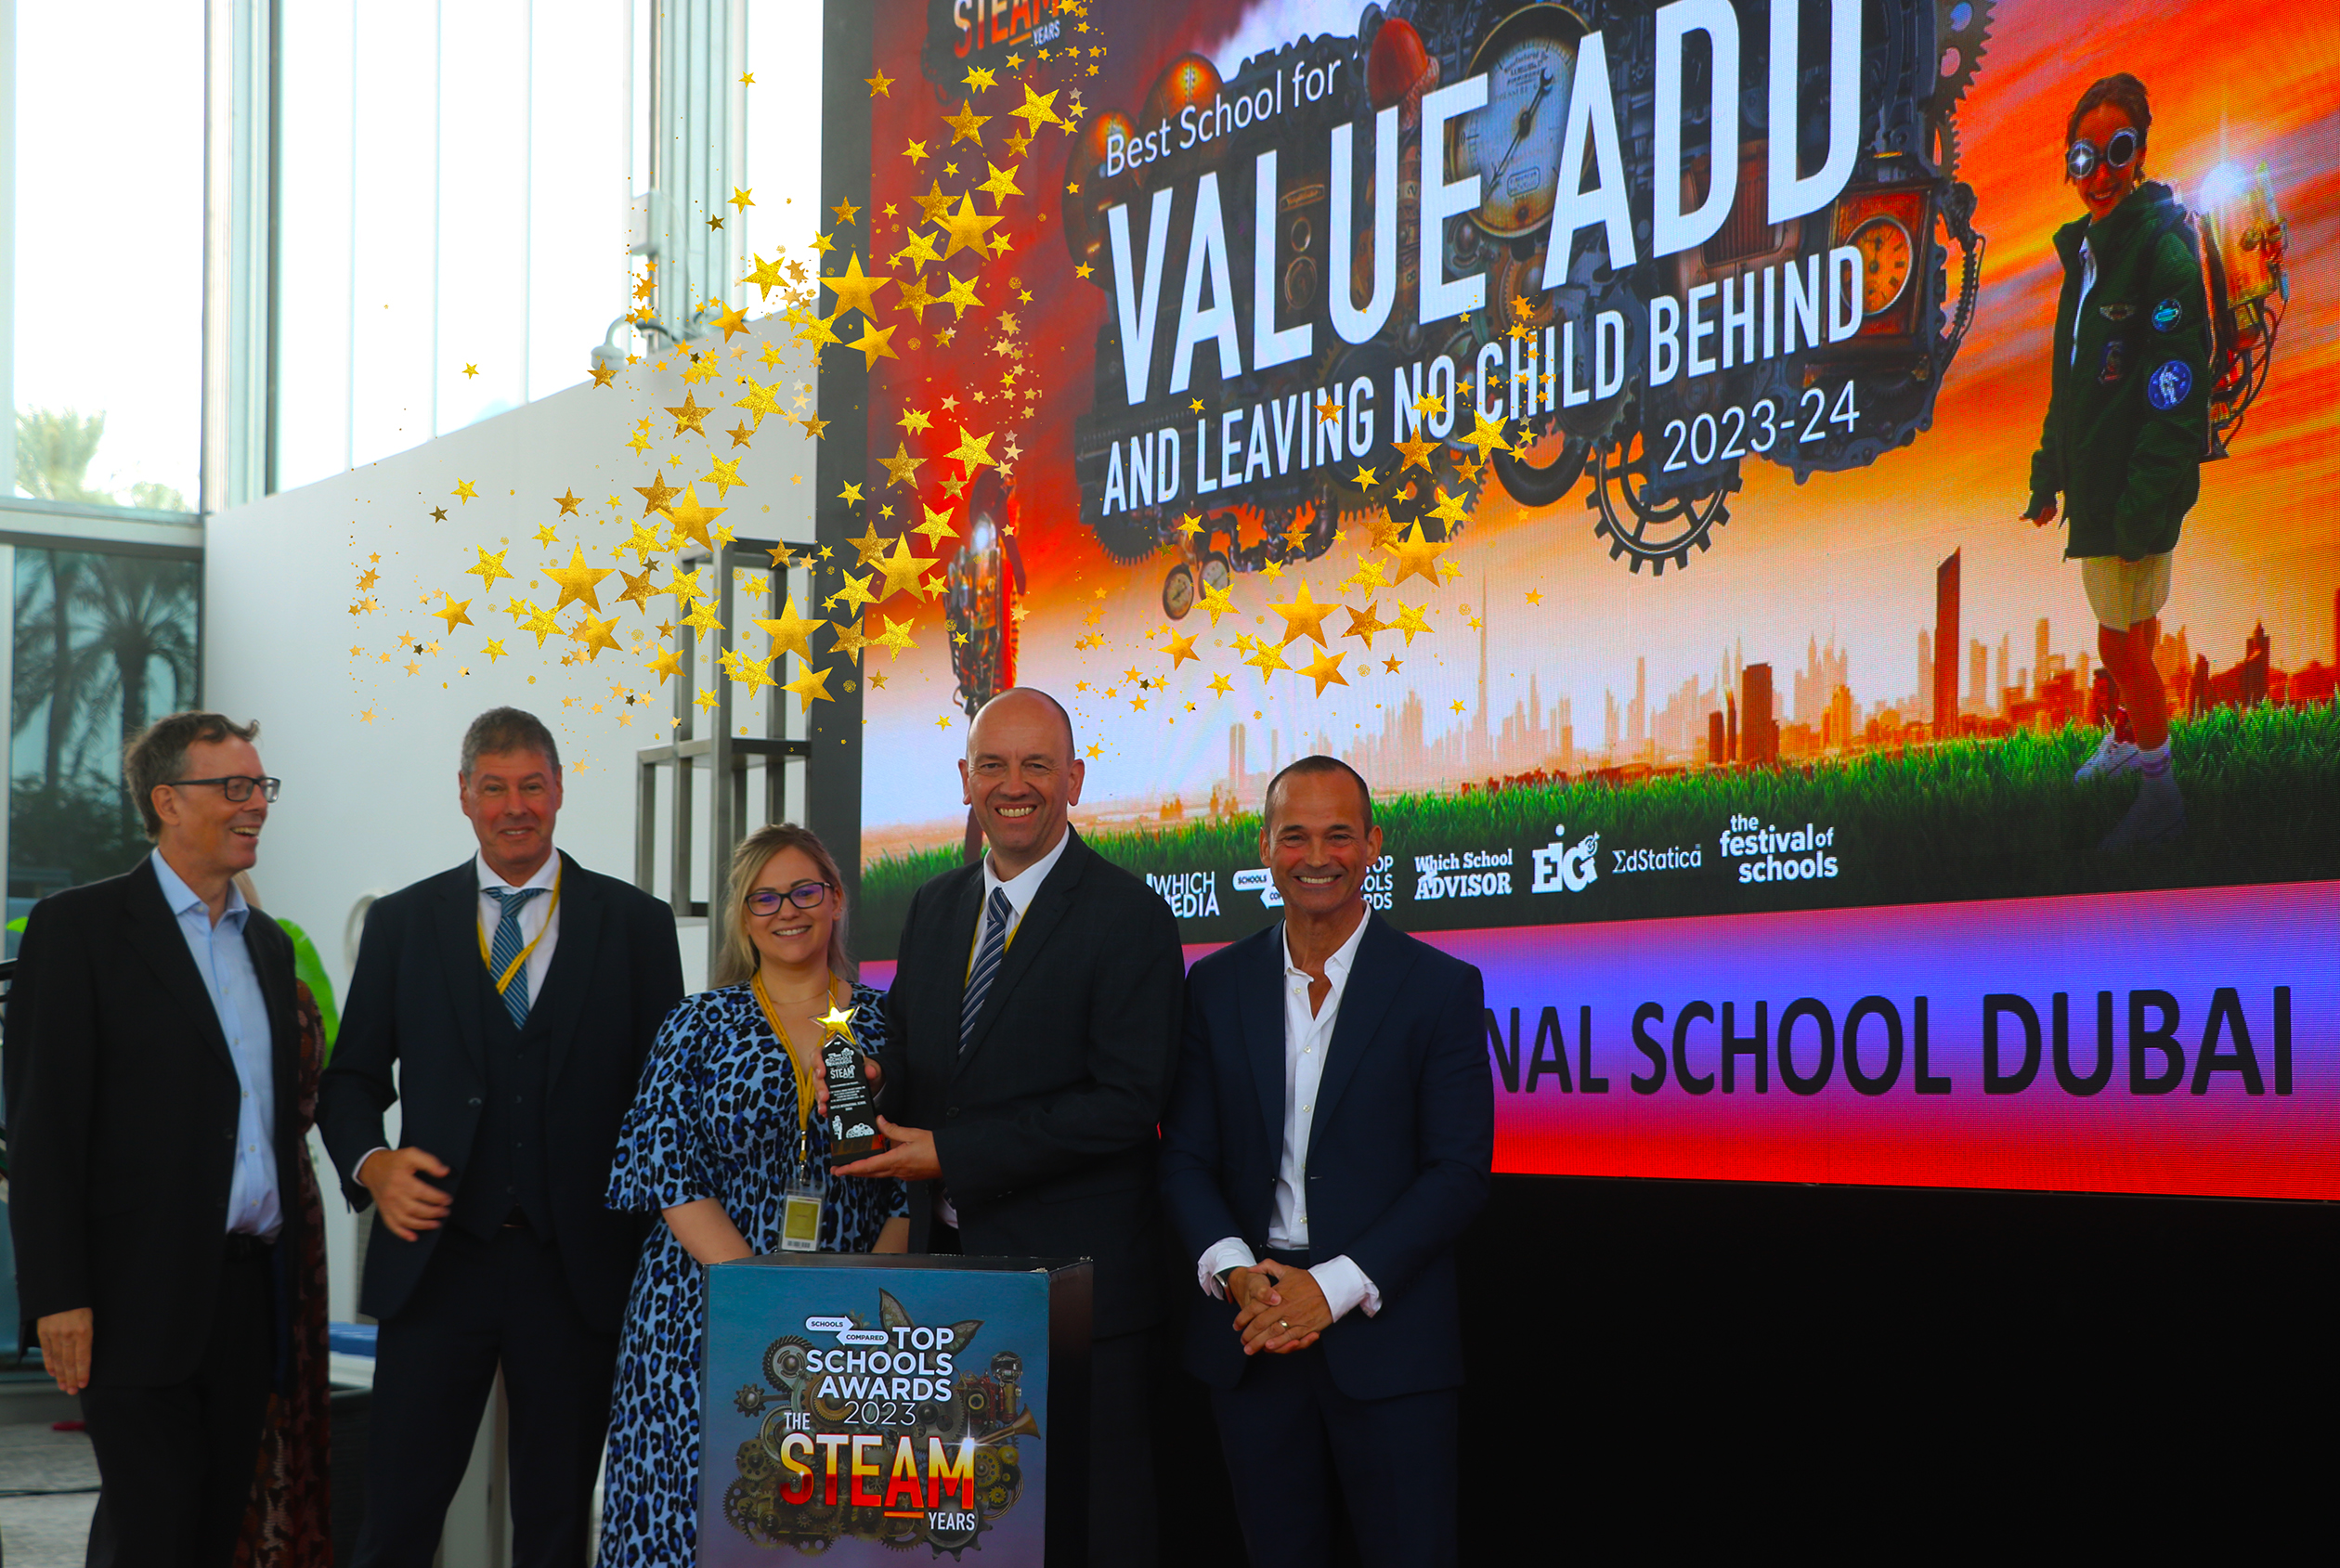 Der Top Schools Award als beste Schule für Mehrwert und „Kein Kind zurücklassen“ wurde an die Raffles International School in Dubai verliehen